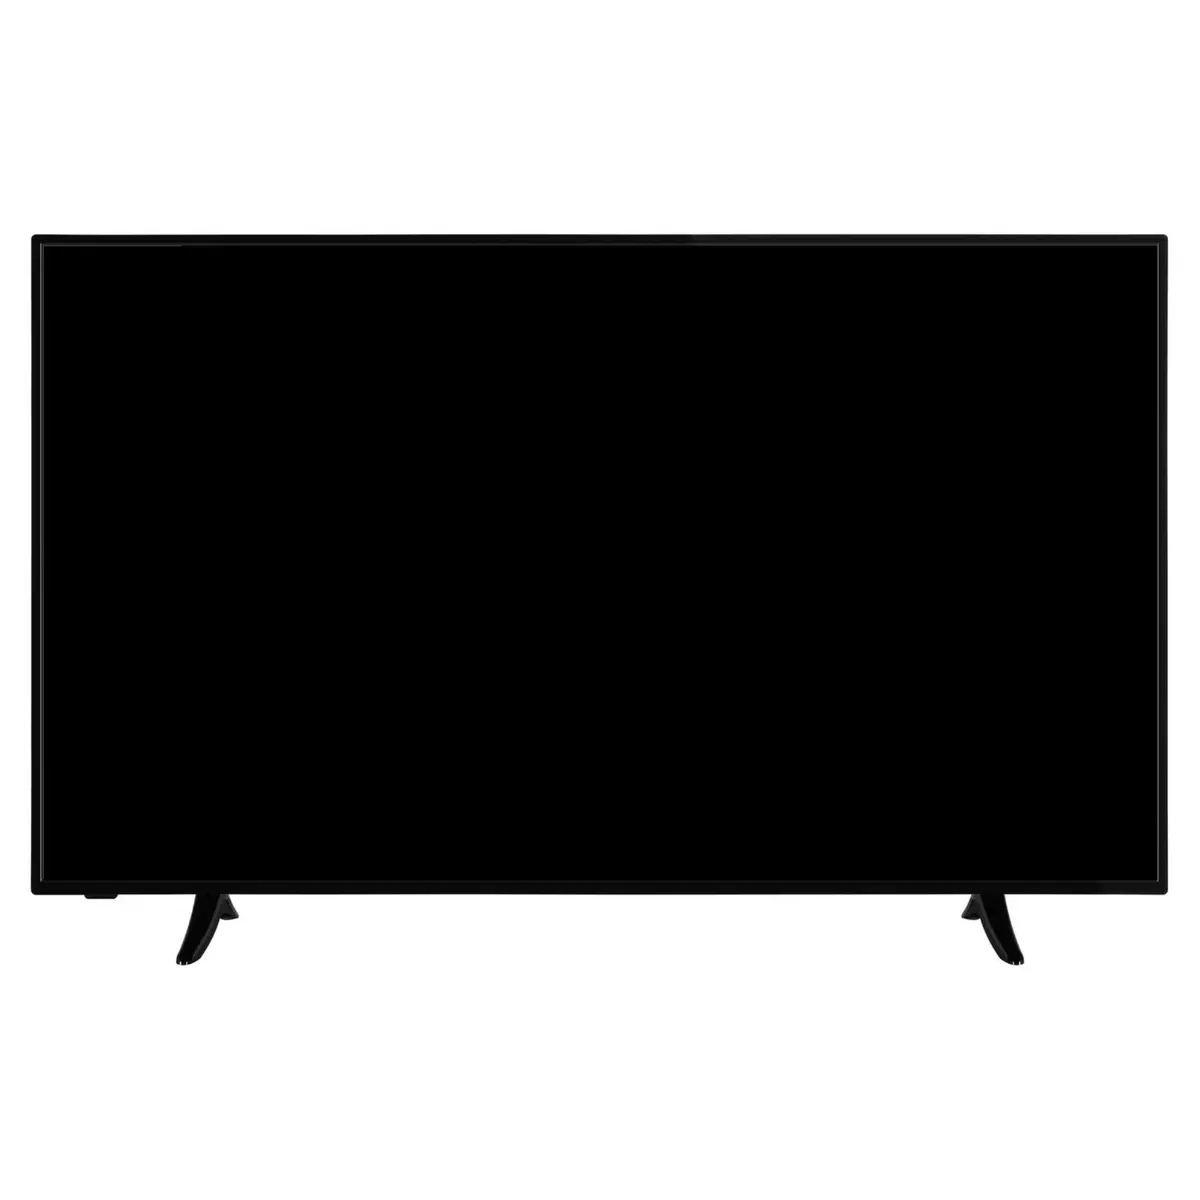 SELECLINE 58S201 TV LED 4K UHD 146 cm Smart TV